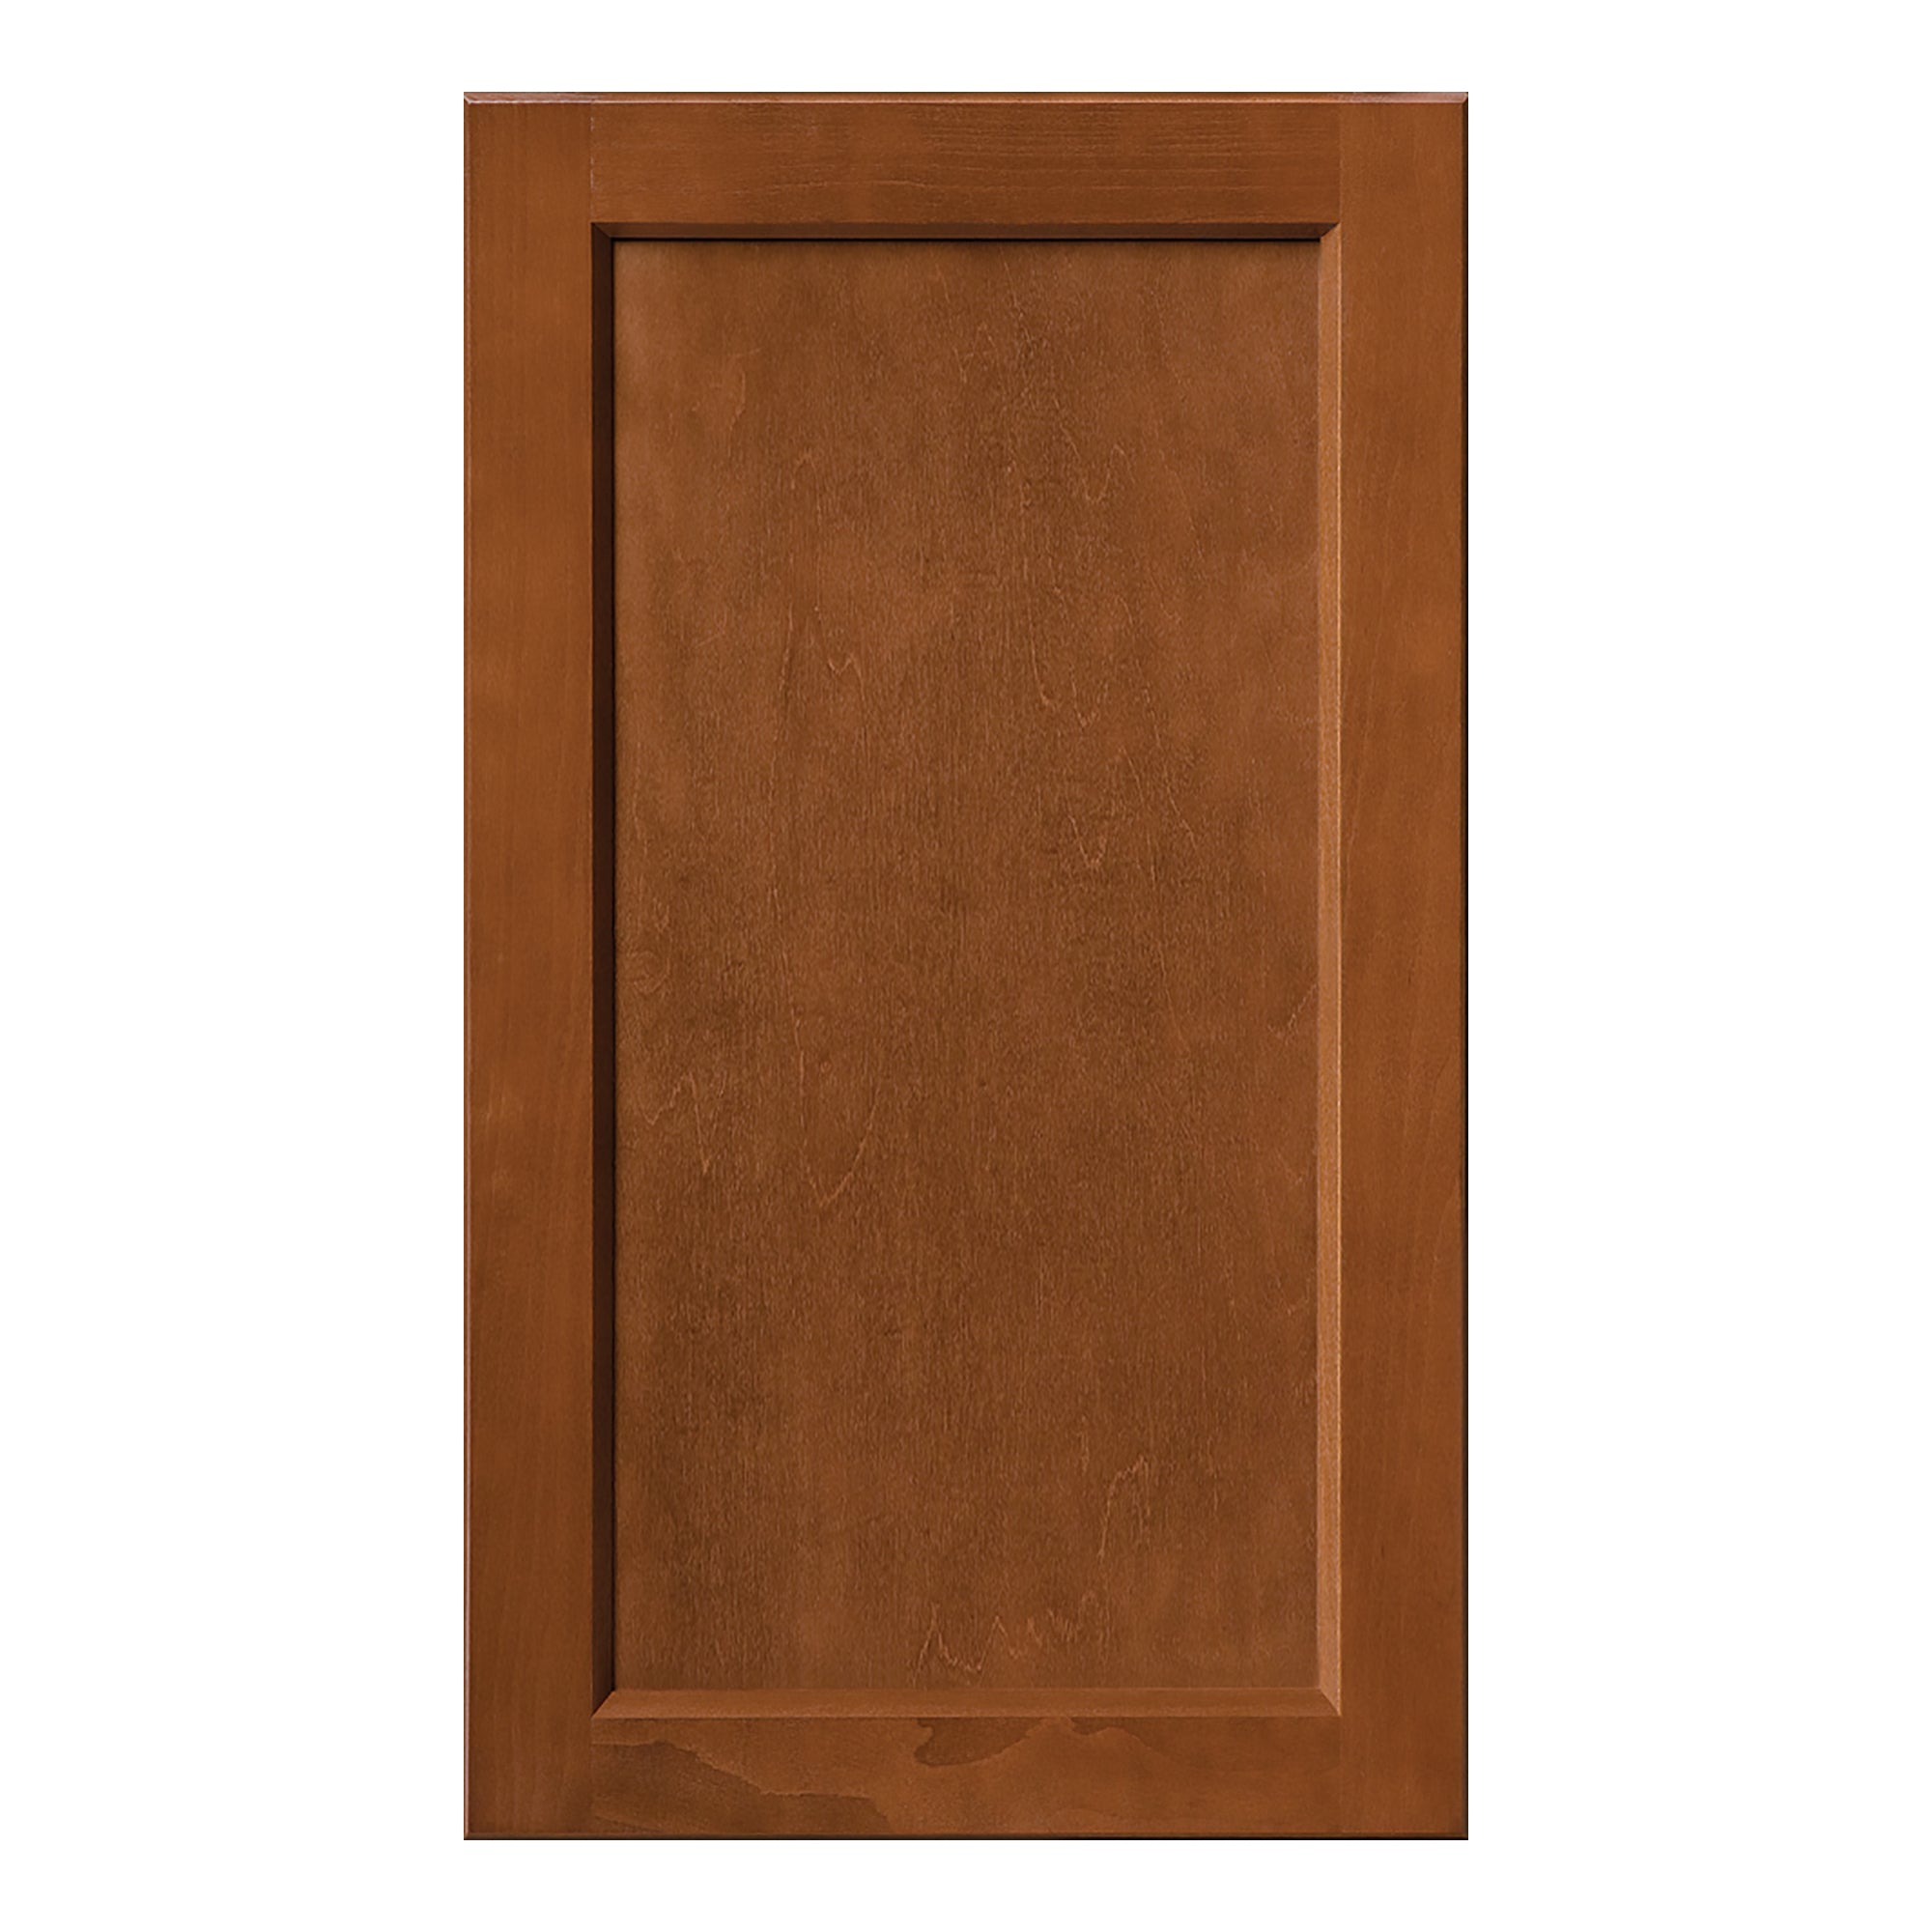 Kitchen Cabinet - Brown Shaker Cabinet Sample Door - Luxor Espresso